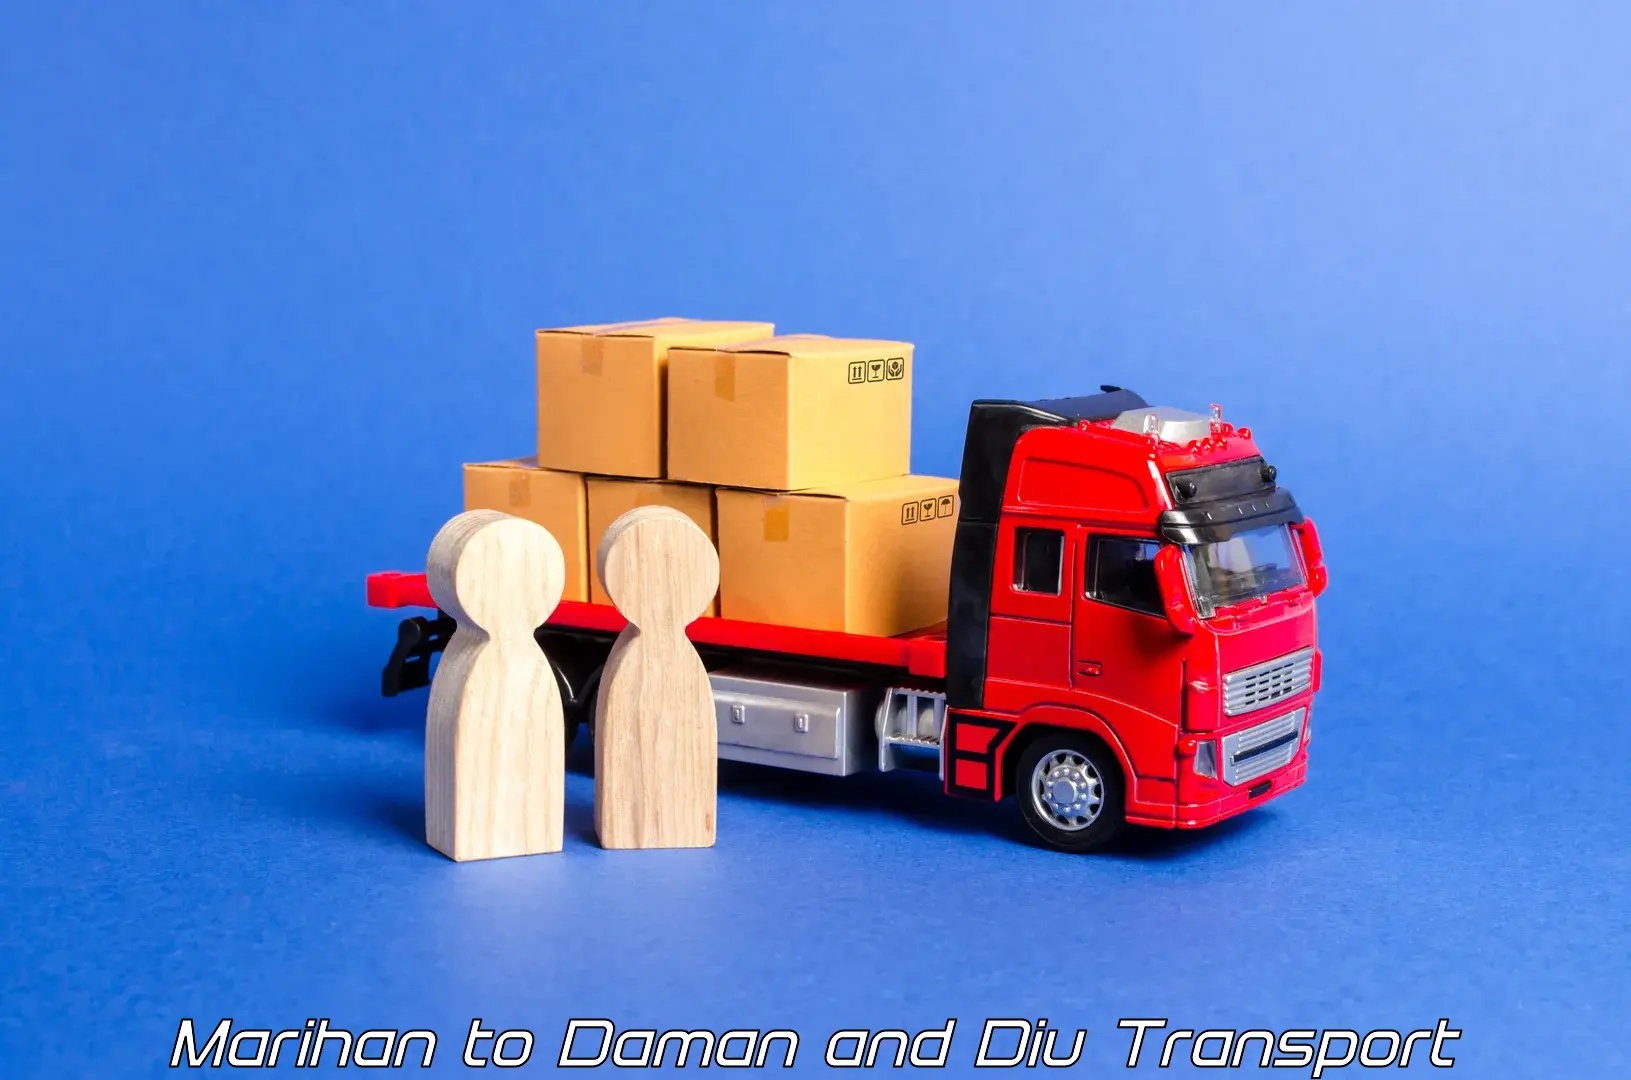 Cargo transportation services Marihan to Diu